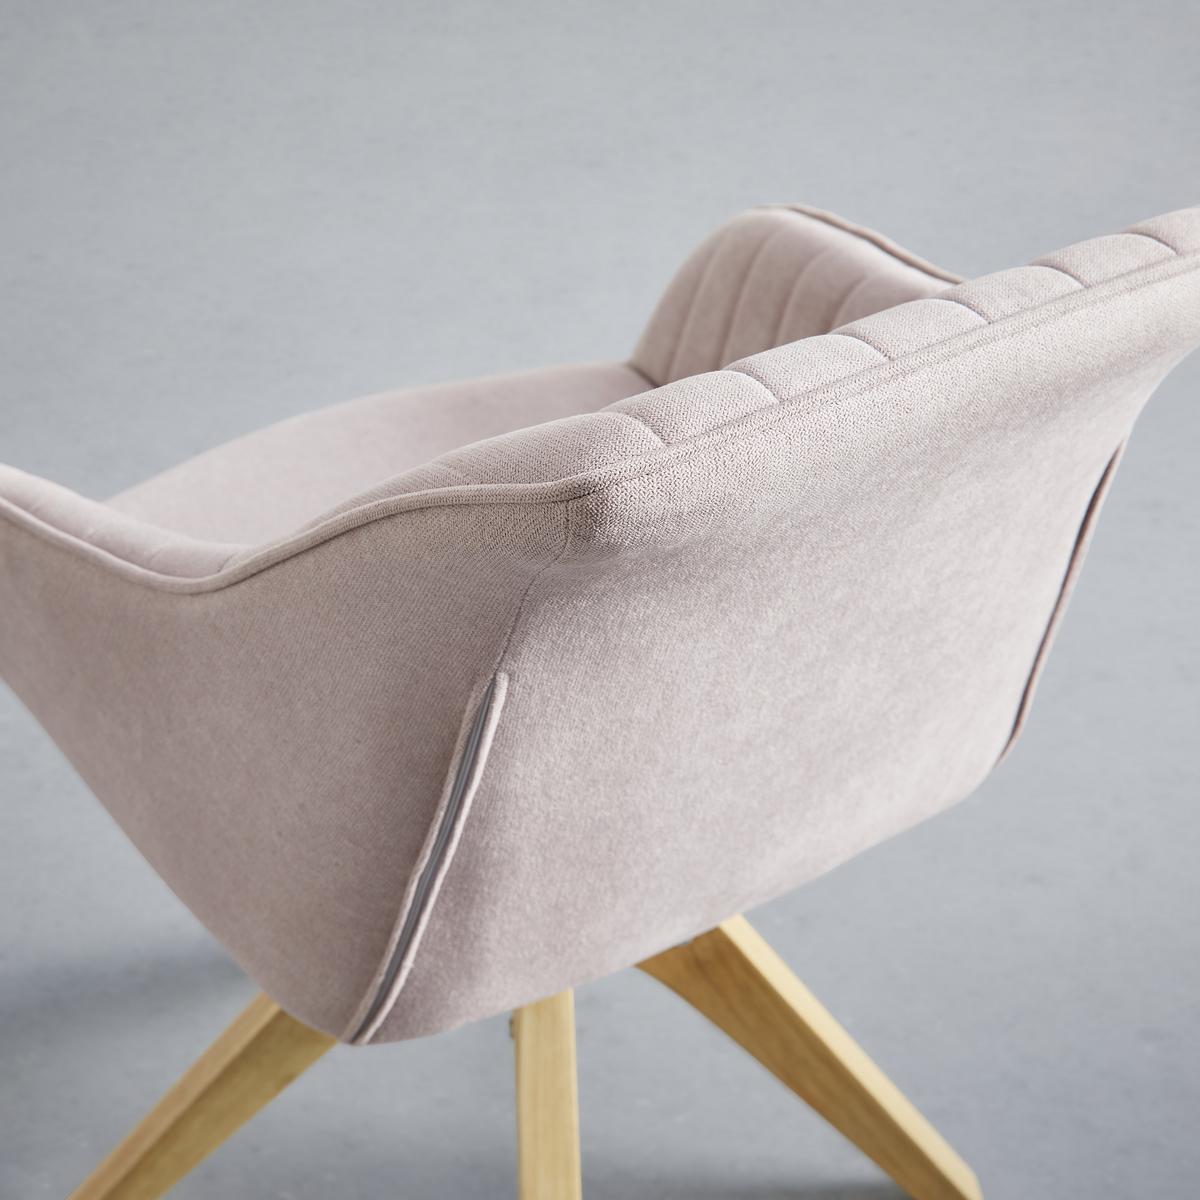 Jídelní Židle Leonie Růžová - růžová/barvy dubu, Moderní, dřevo/textil (60/84/61cm) - Modern Living